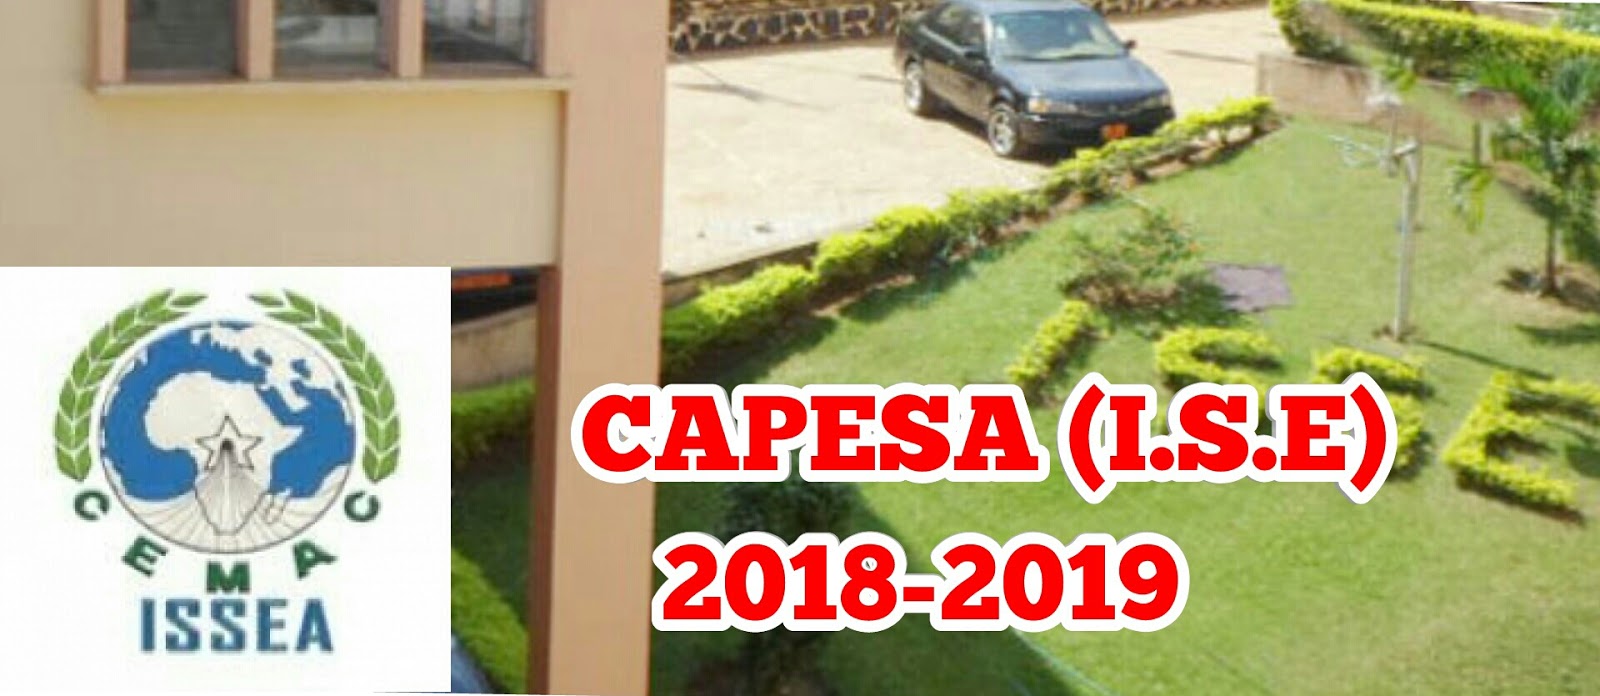 CAPESA (I.S.E) 2018-2019 ISSEA Yaounde